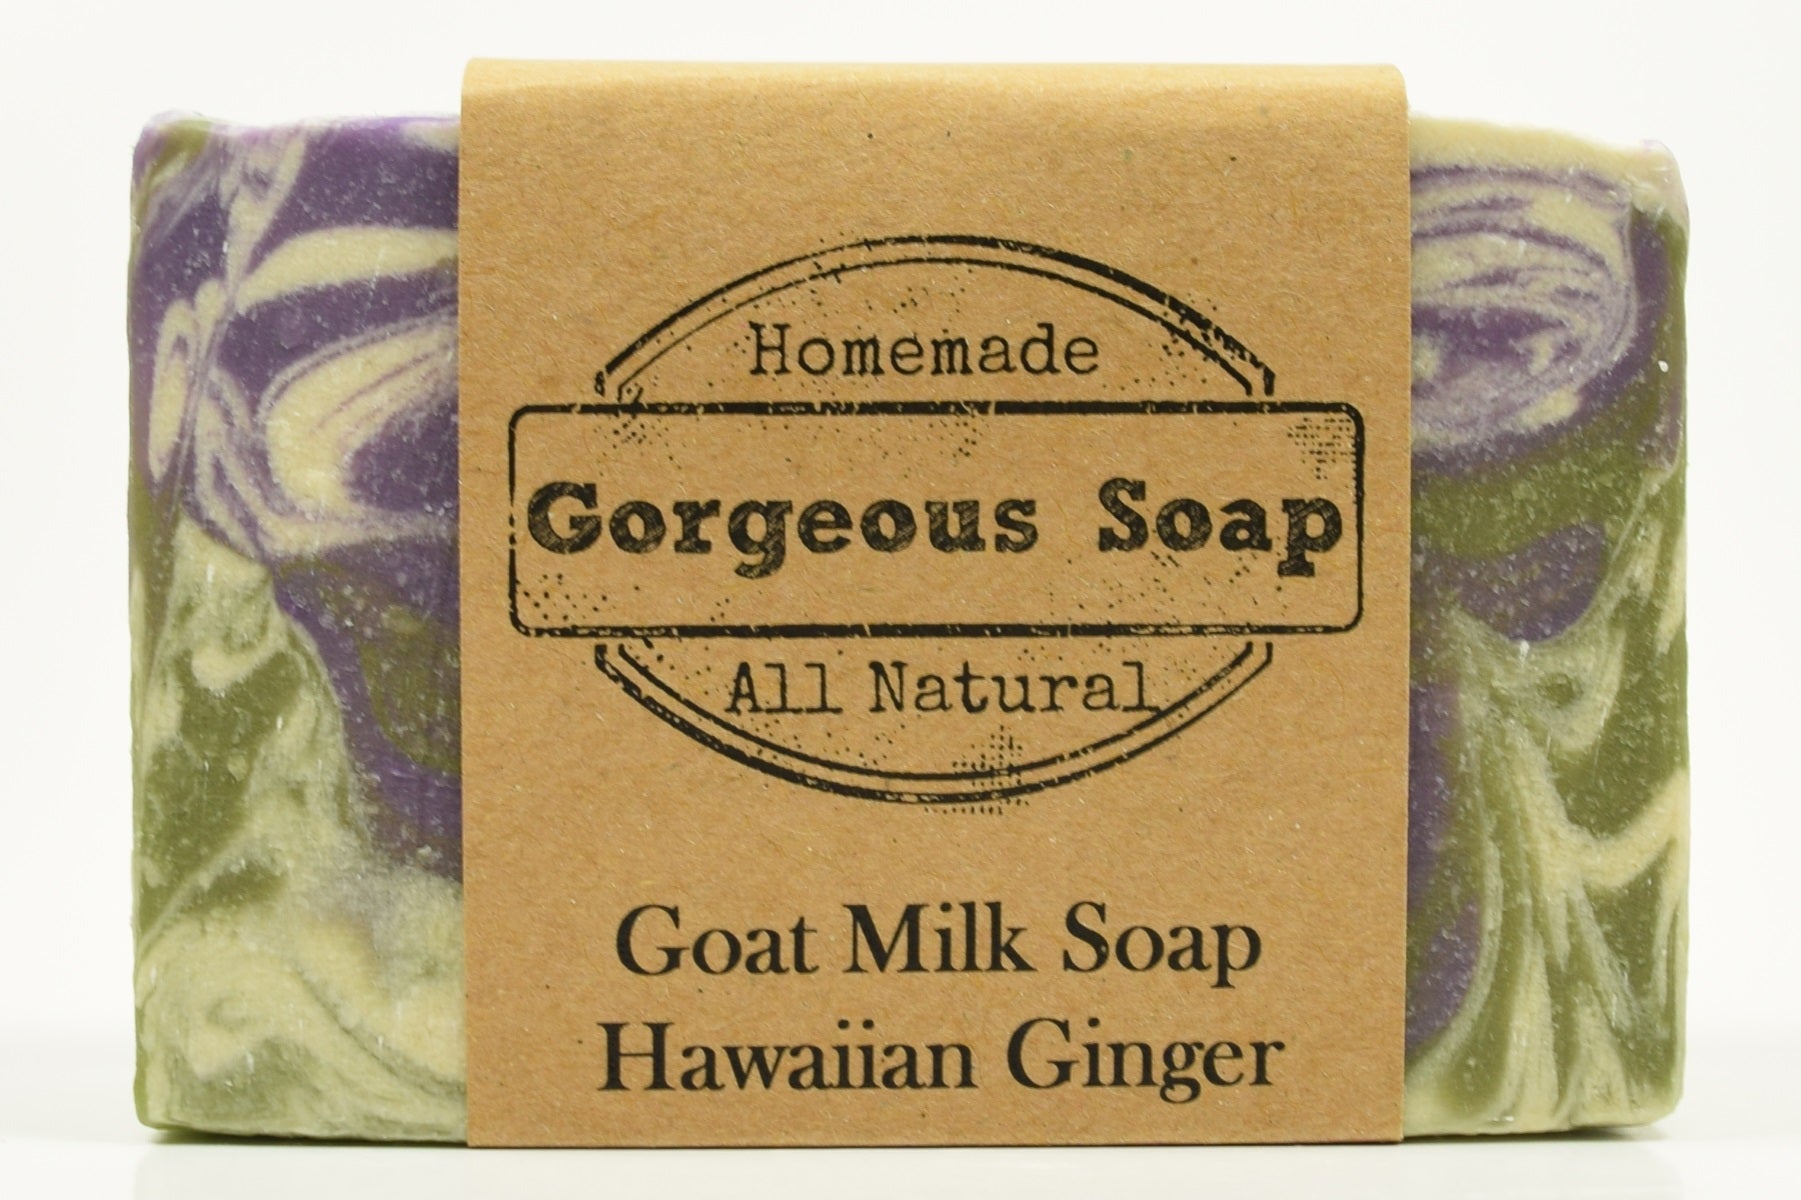 Ginger Milk Goat Soap